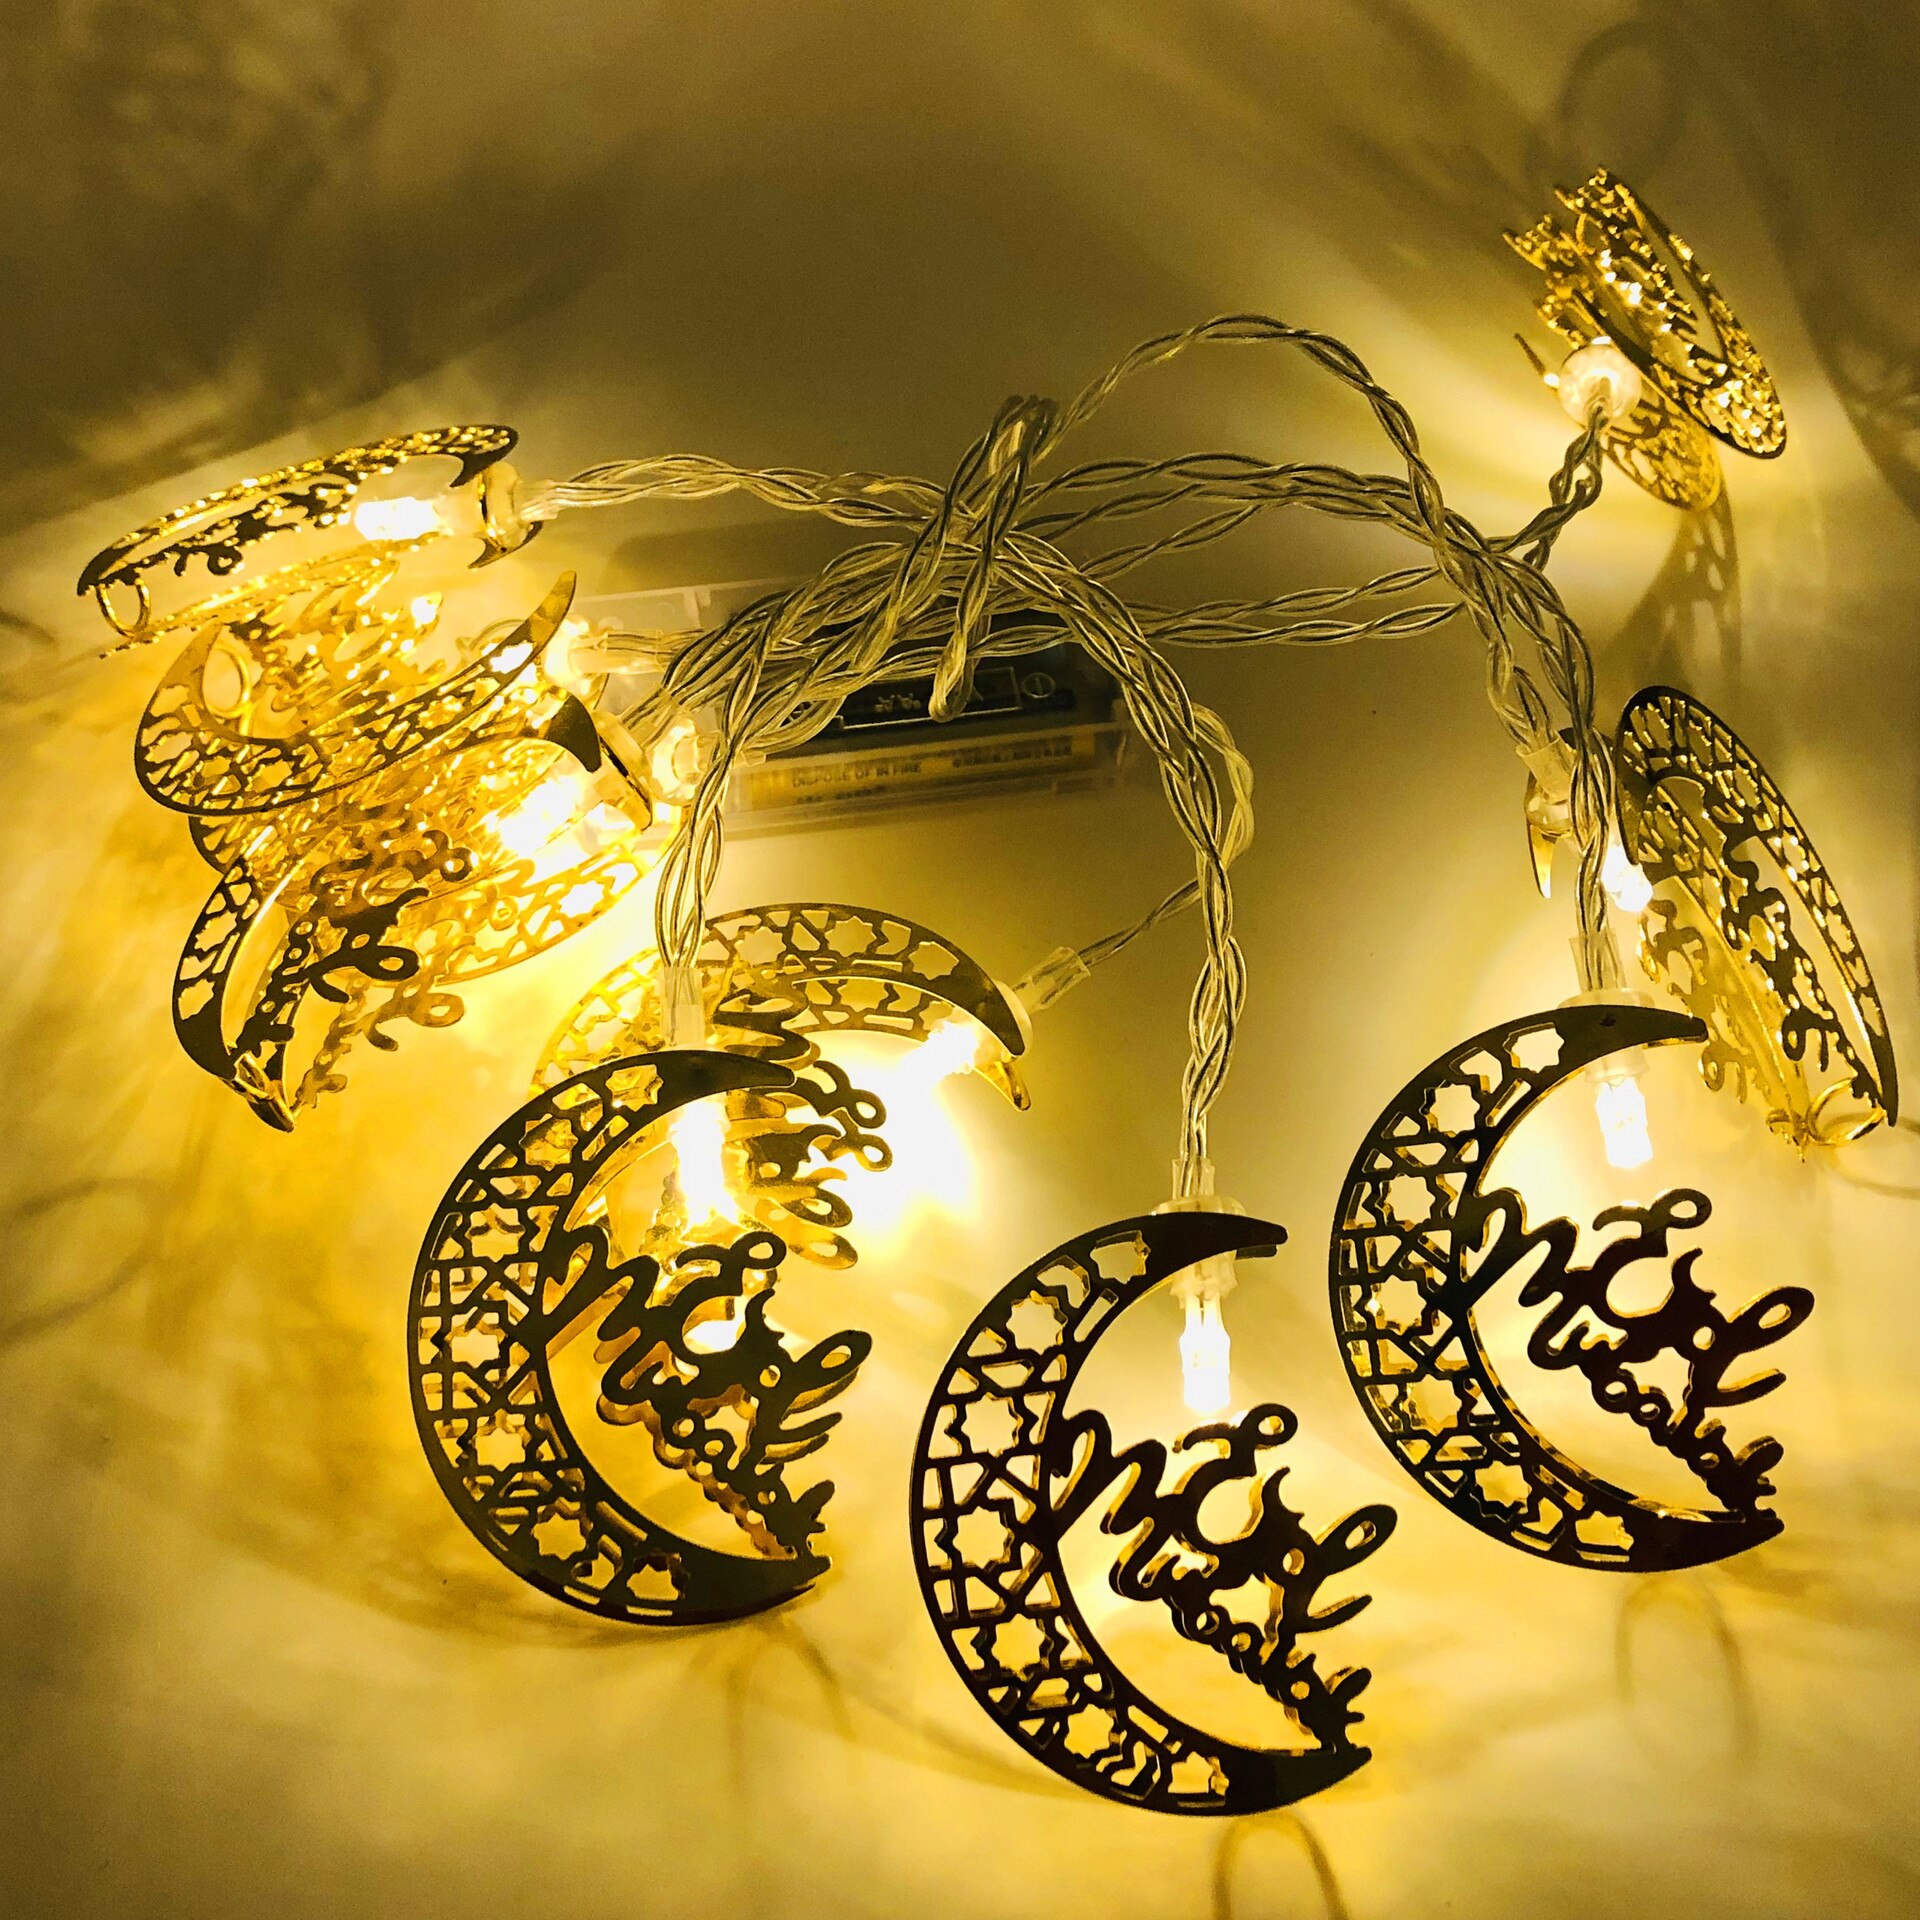 Hold Csillag Palota Eid Mubarak Light Garland Ramadan Dekoráció Iszlám Muzulmán Párt Al Adha Otthon